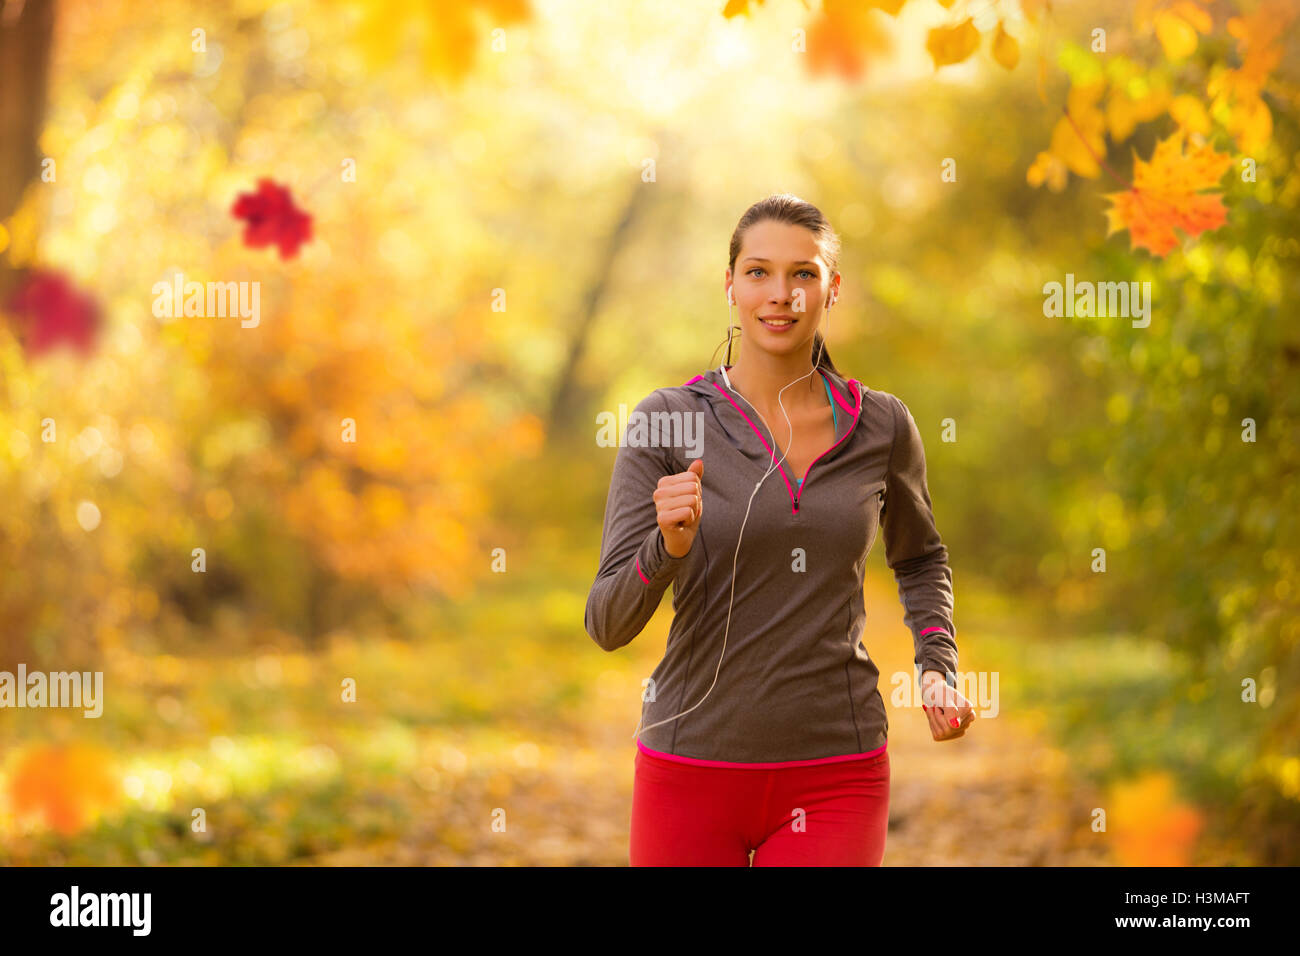 Athlet junge Frau läuft im Sonnenaufgang Morgentraining für Marathon und Fitness. Gesunden, aktiven Lebensstil im freien Stockfoto